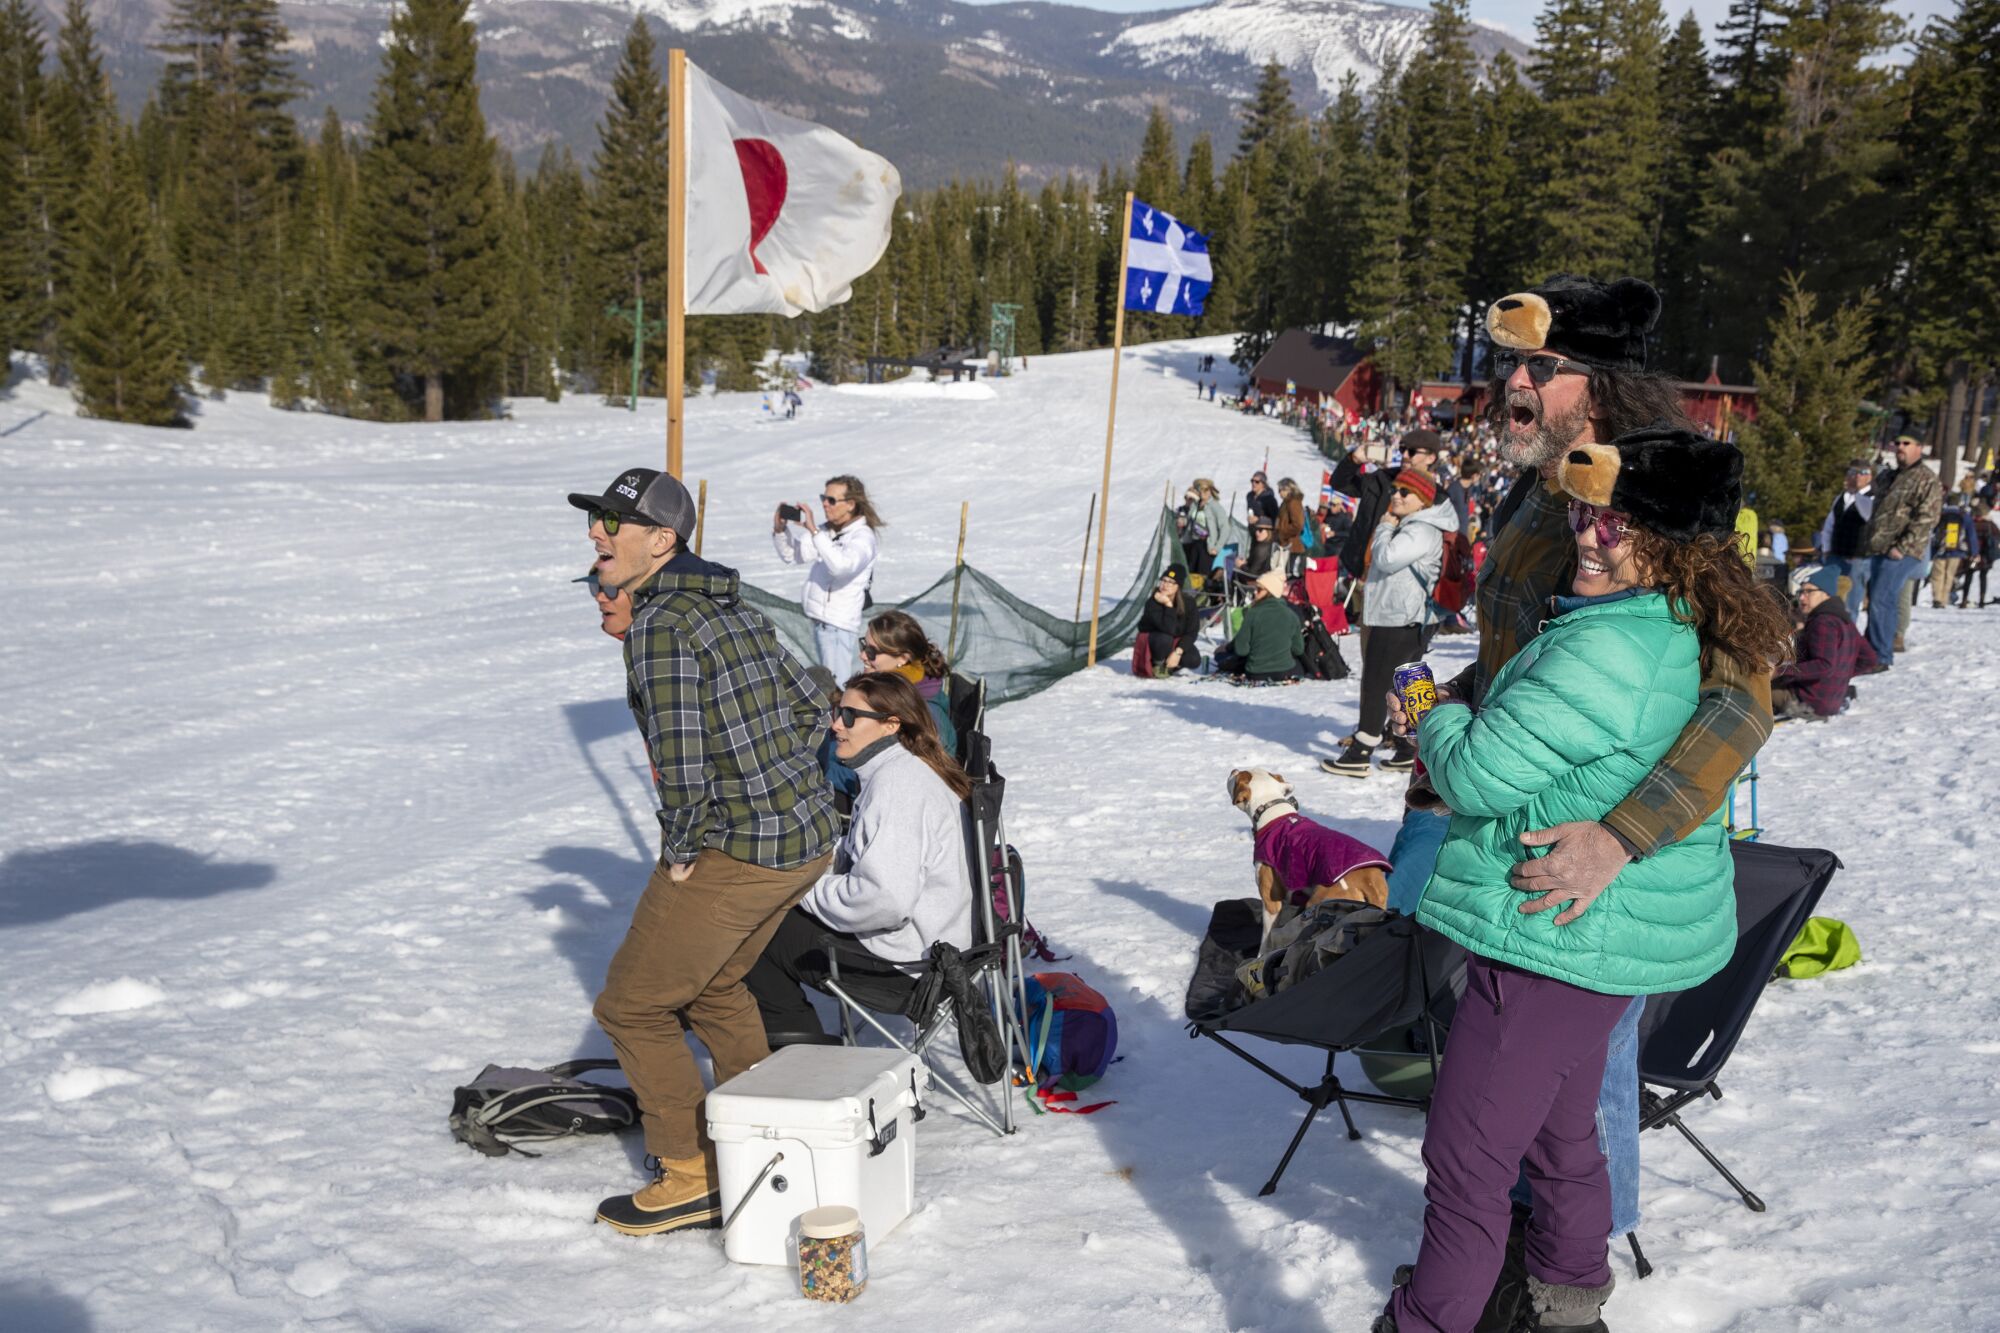 Spectators cheer on ski racers